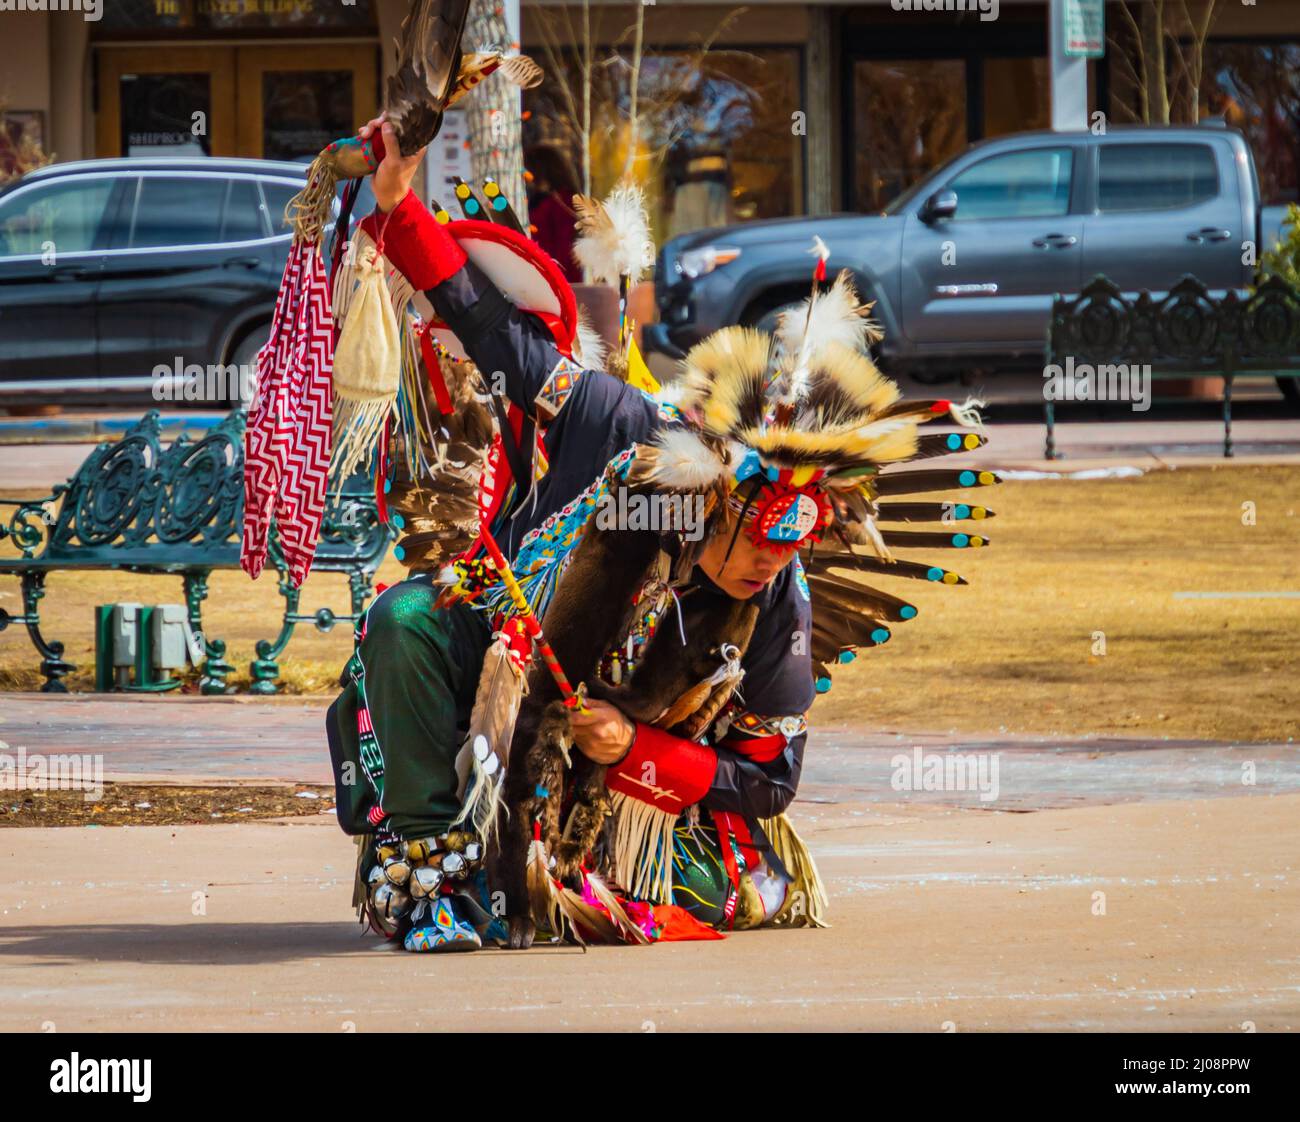 Santa Fe, Nuevo México/EE.UU.- 25 de febrero de 2022: Bailarín indígena nativo americano en el baile tradicional de disfraces en la plaza Foto de stock